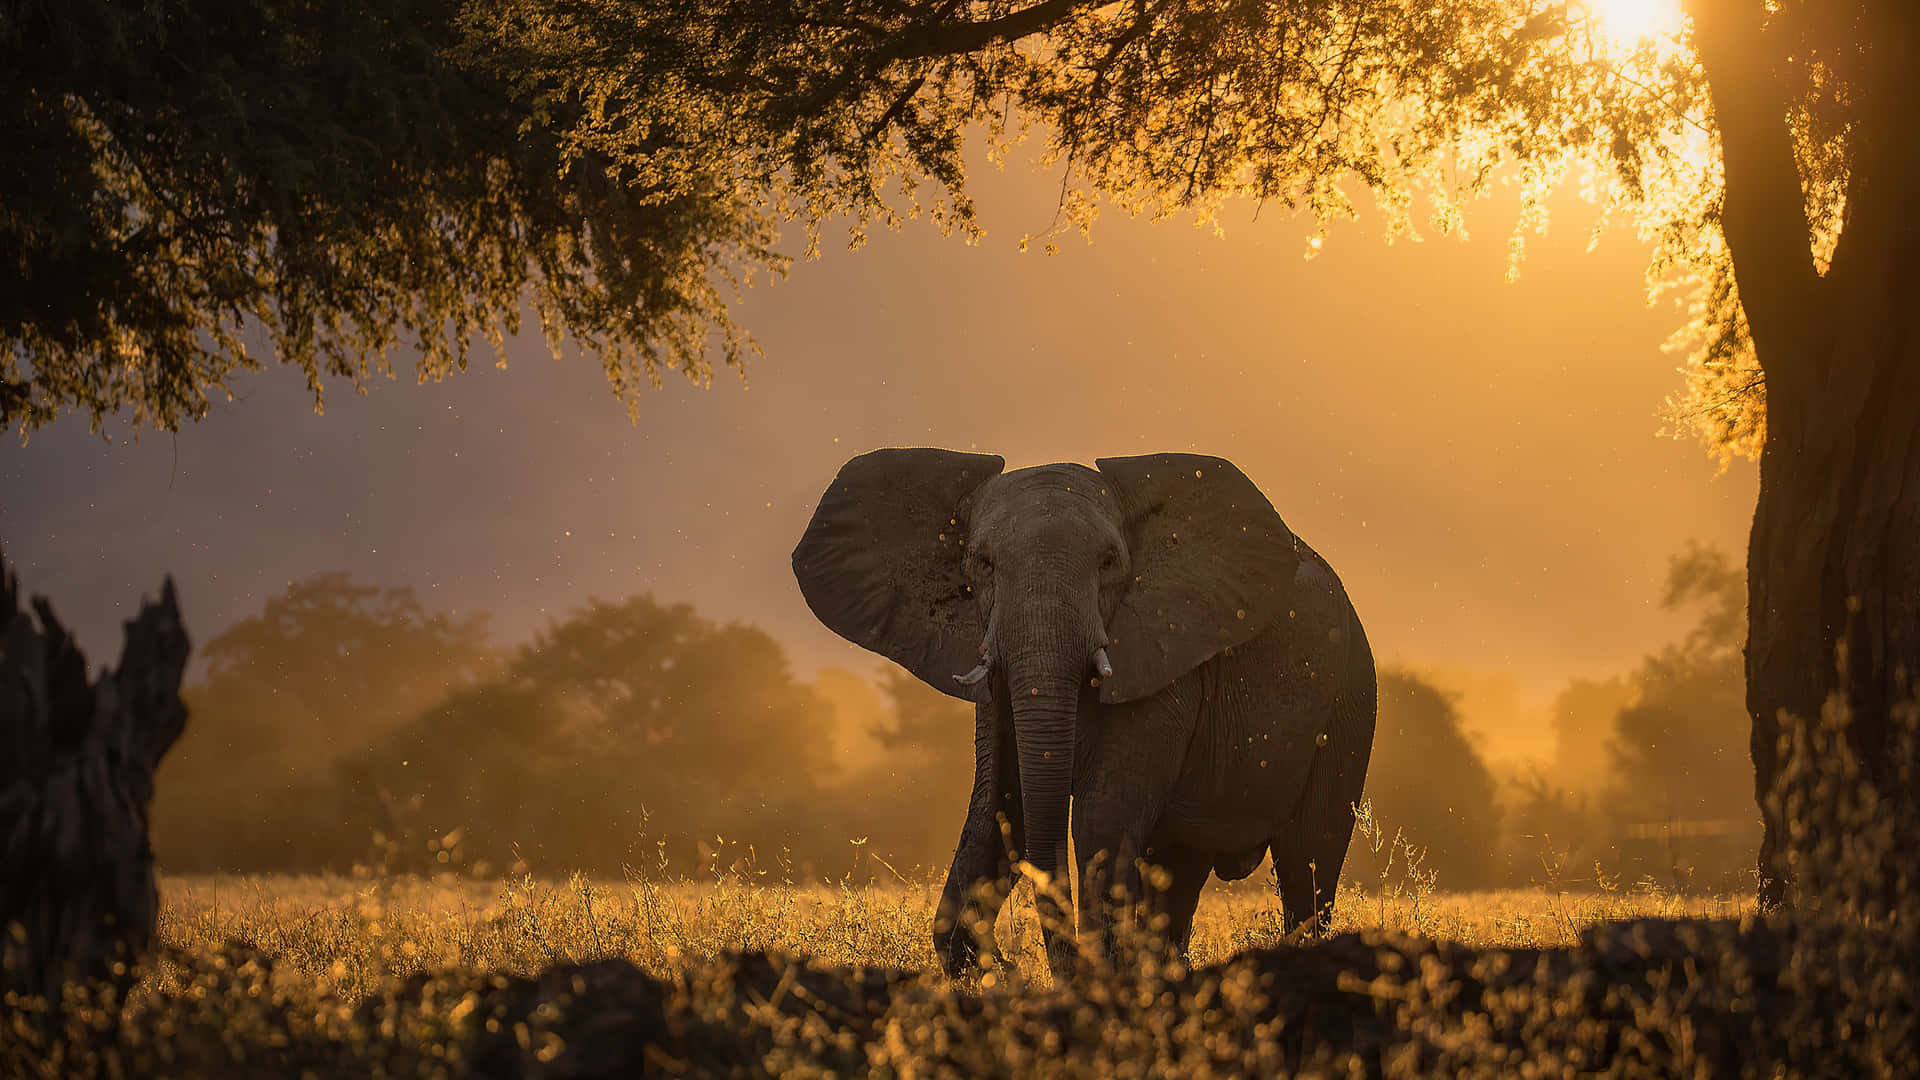 An Elephant Walking Through The Grass At Sunset Wallpaper